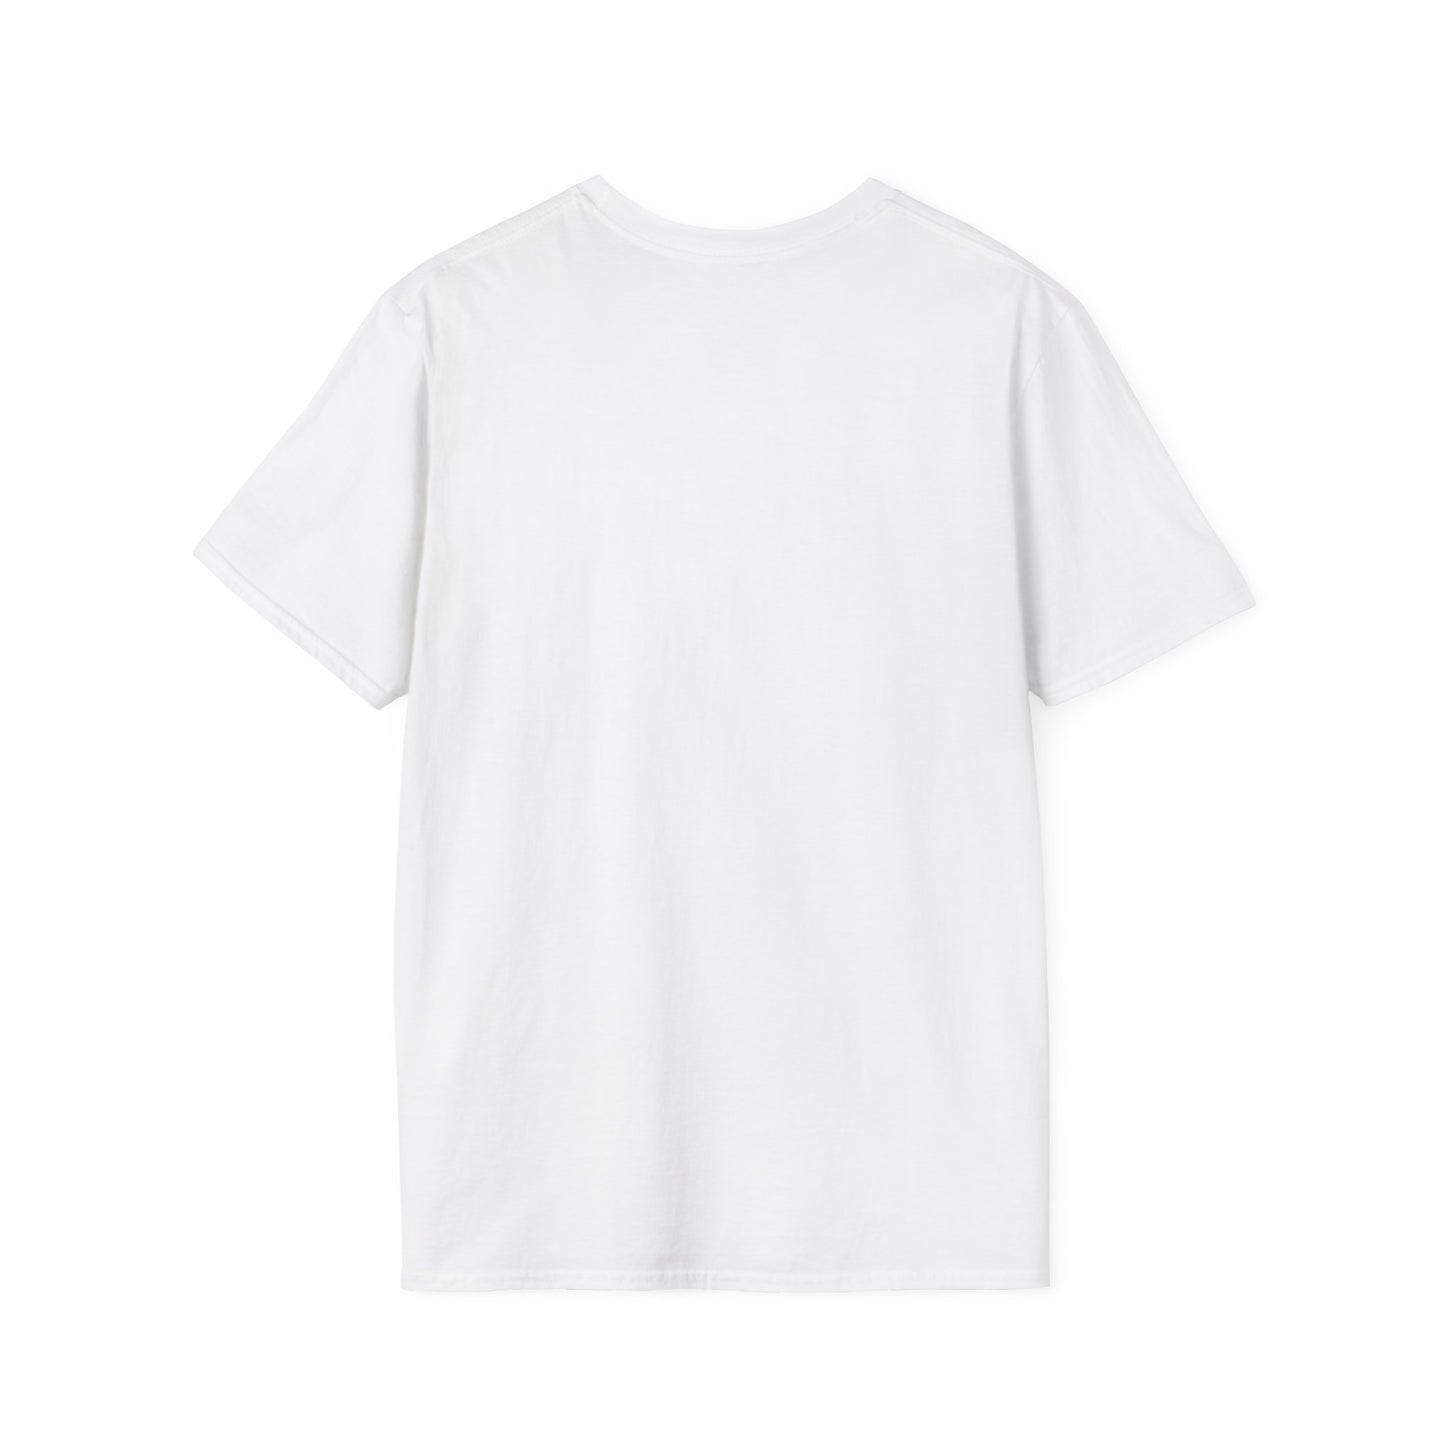 LCAM-15 Unisex Softstyle T-Shirt